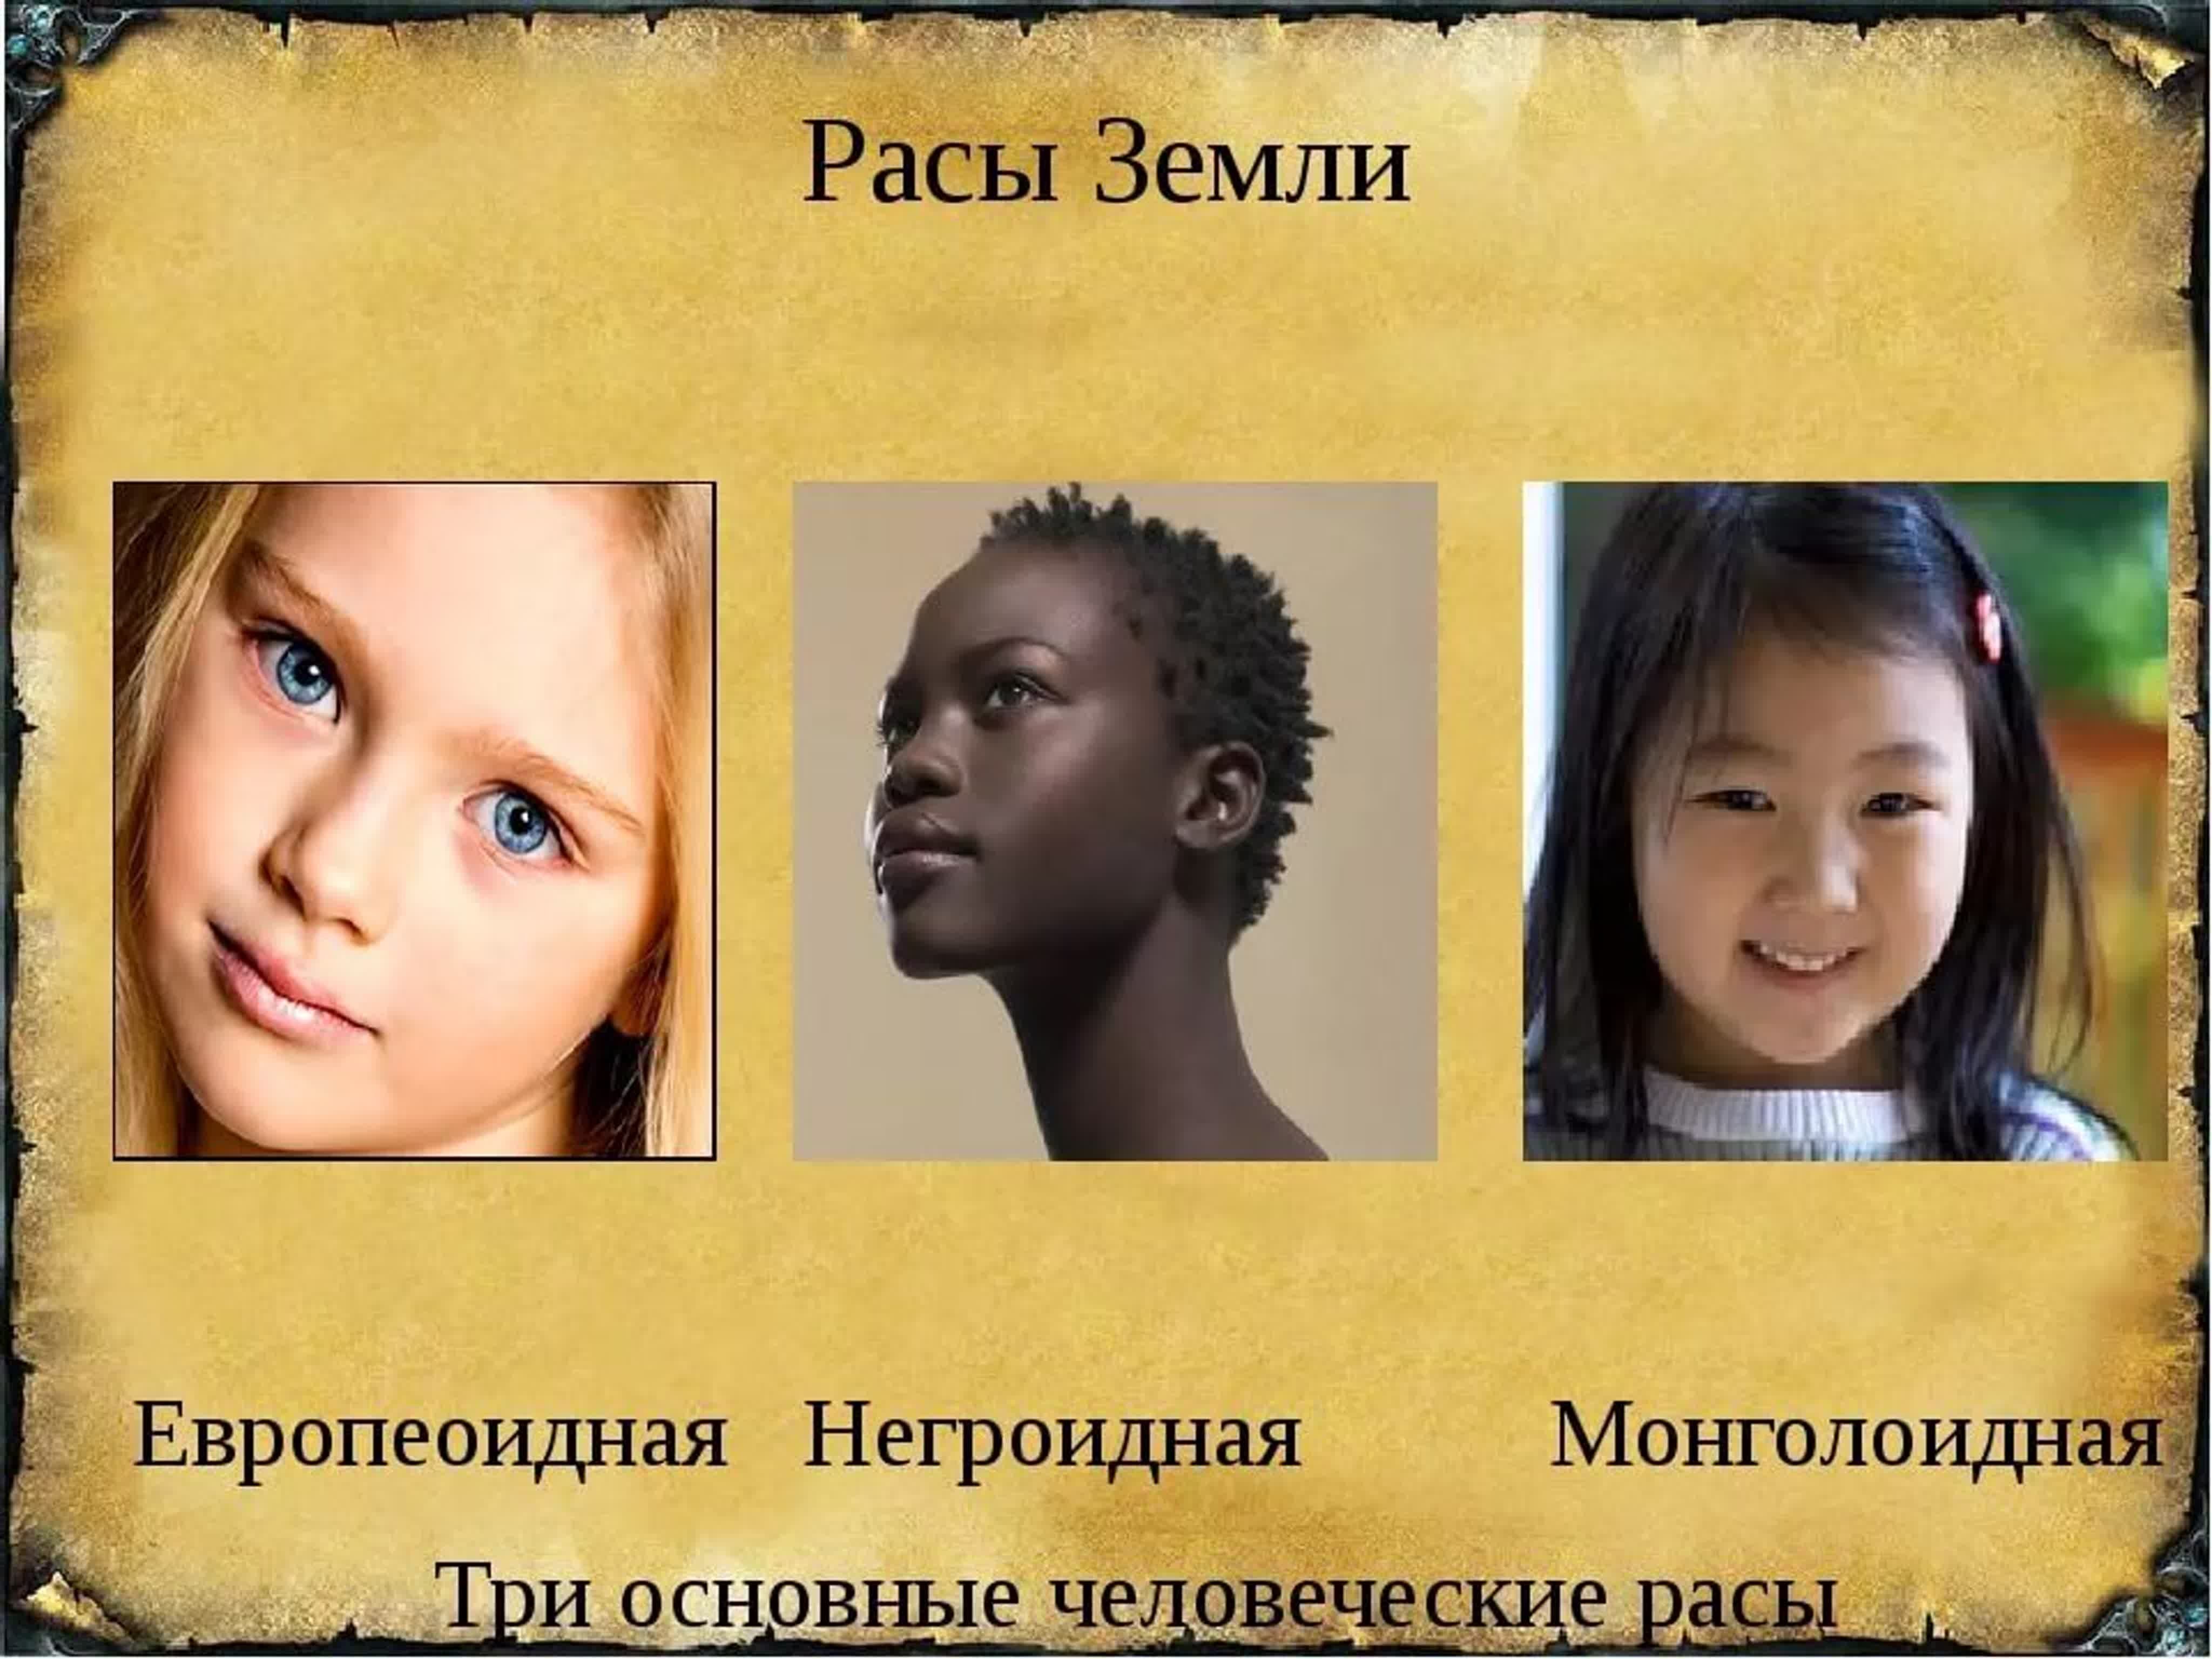 Определение расы. Расы людей европеоидная монголоидная негроидная. Три расы монголоидная, негроидная, европейская. Люди европеоидной и монголоидной расы. Современные расы.